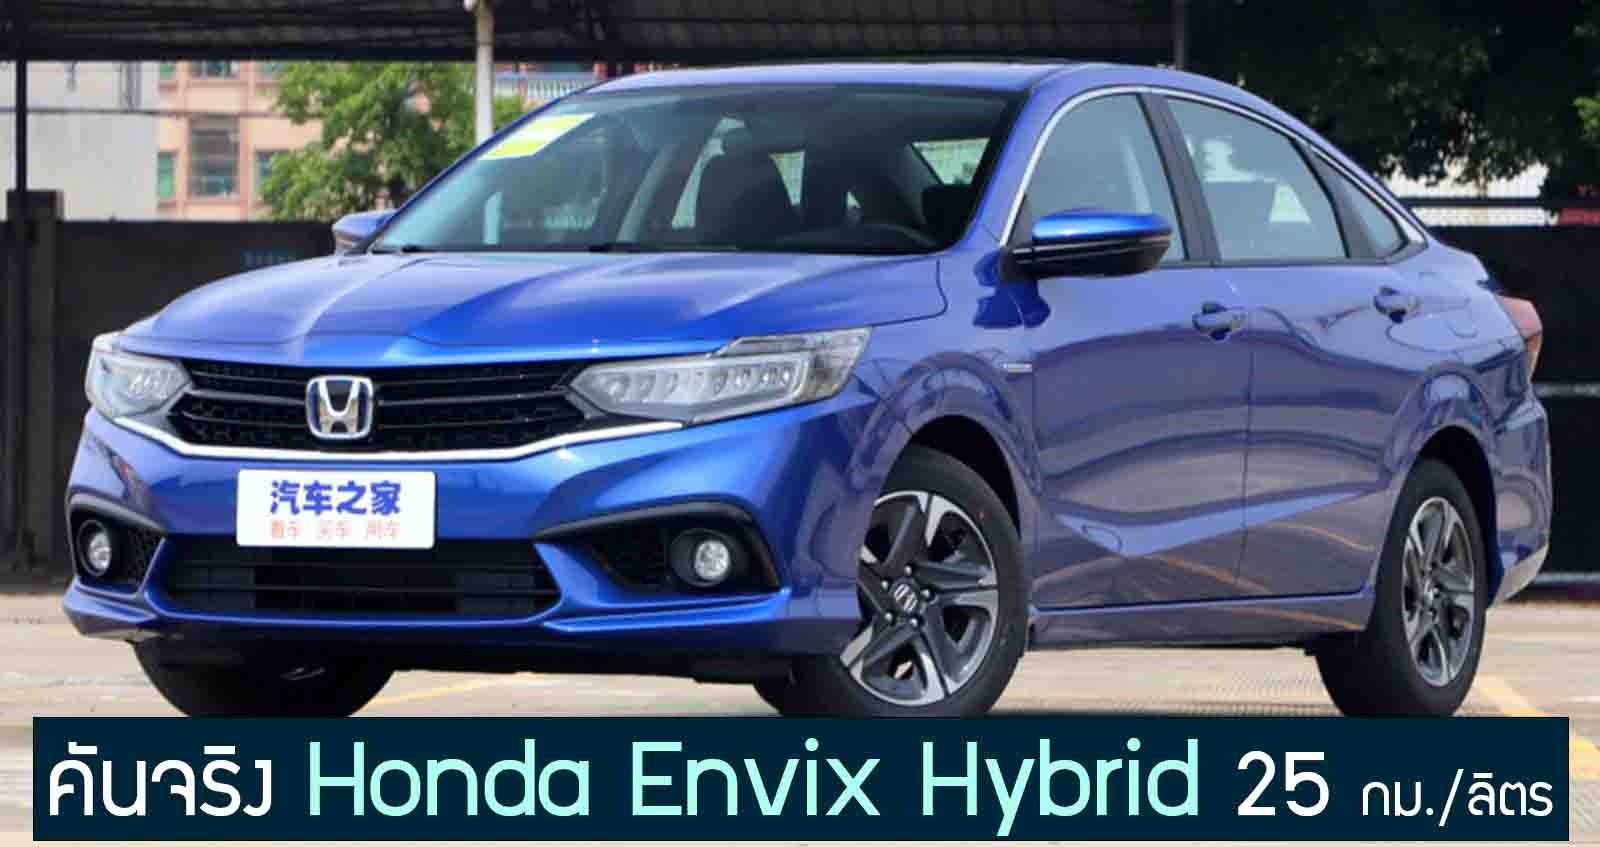 ภาพคันจริง Honda Envix Hybrid สิ้นเปลือง 25 กม./ลิตร ในจีน